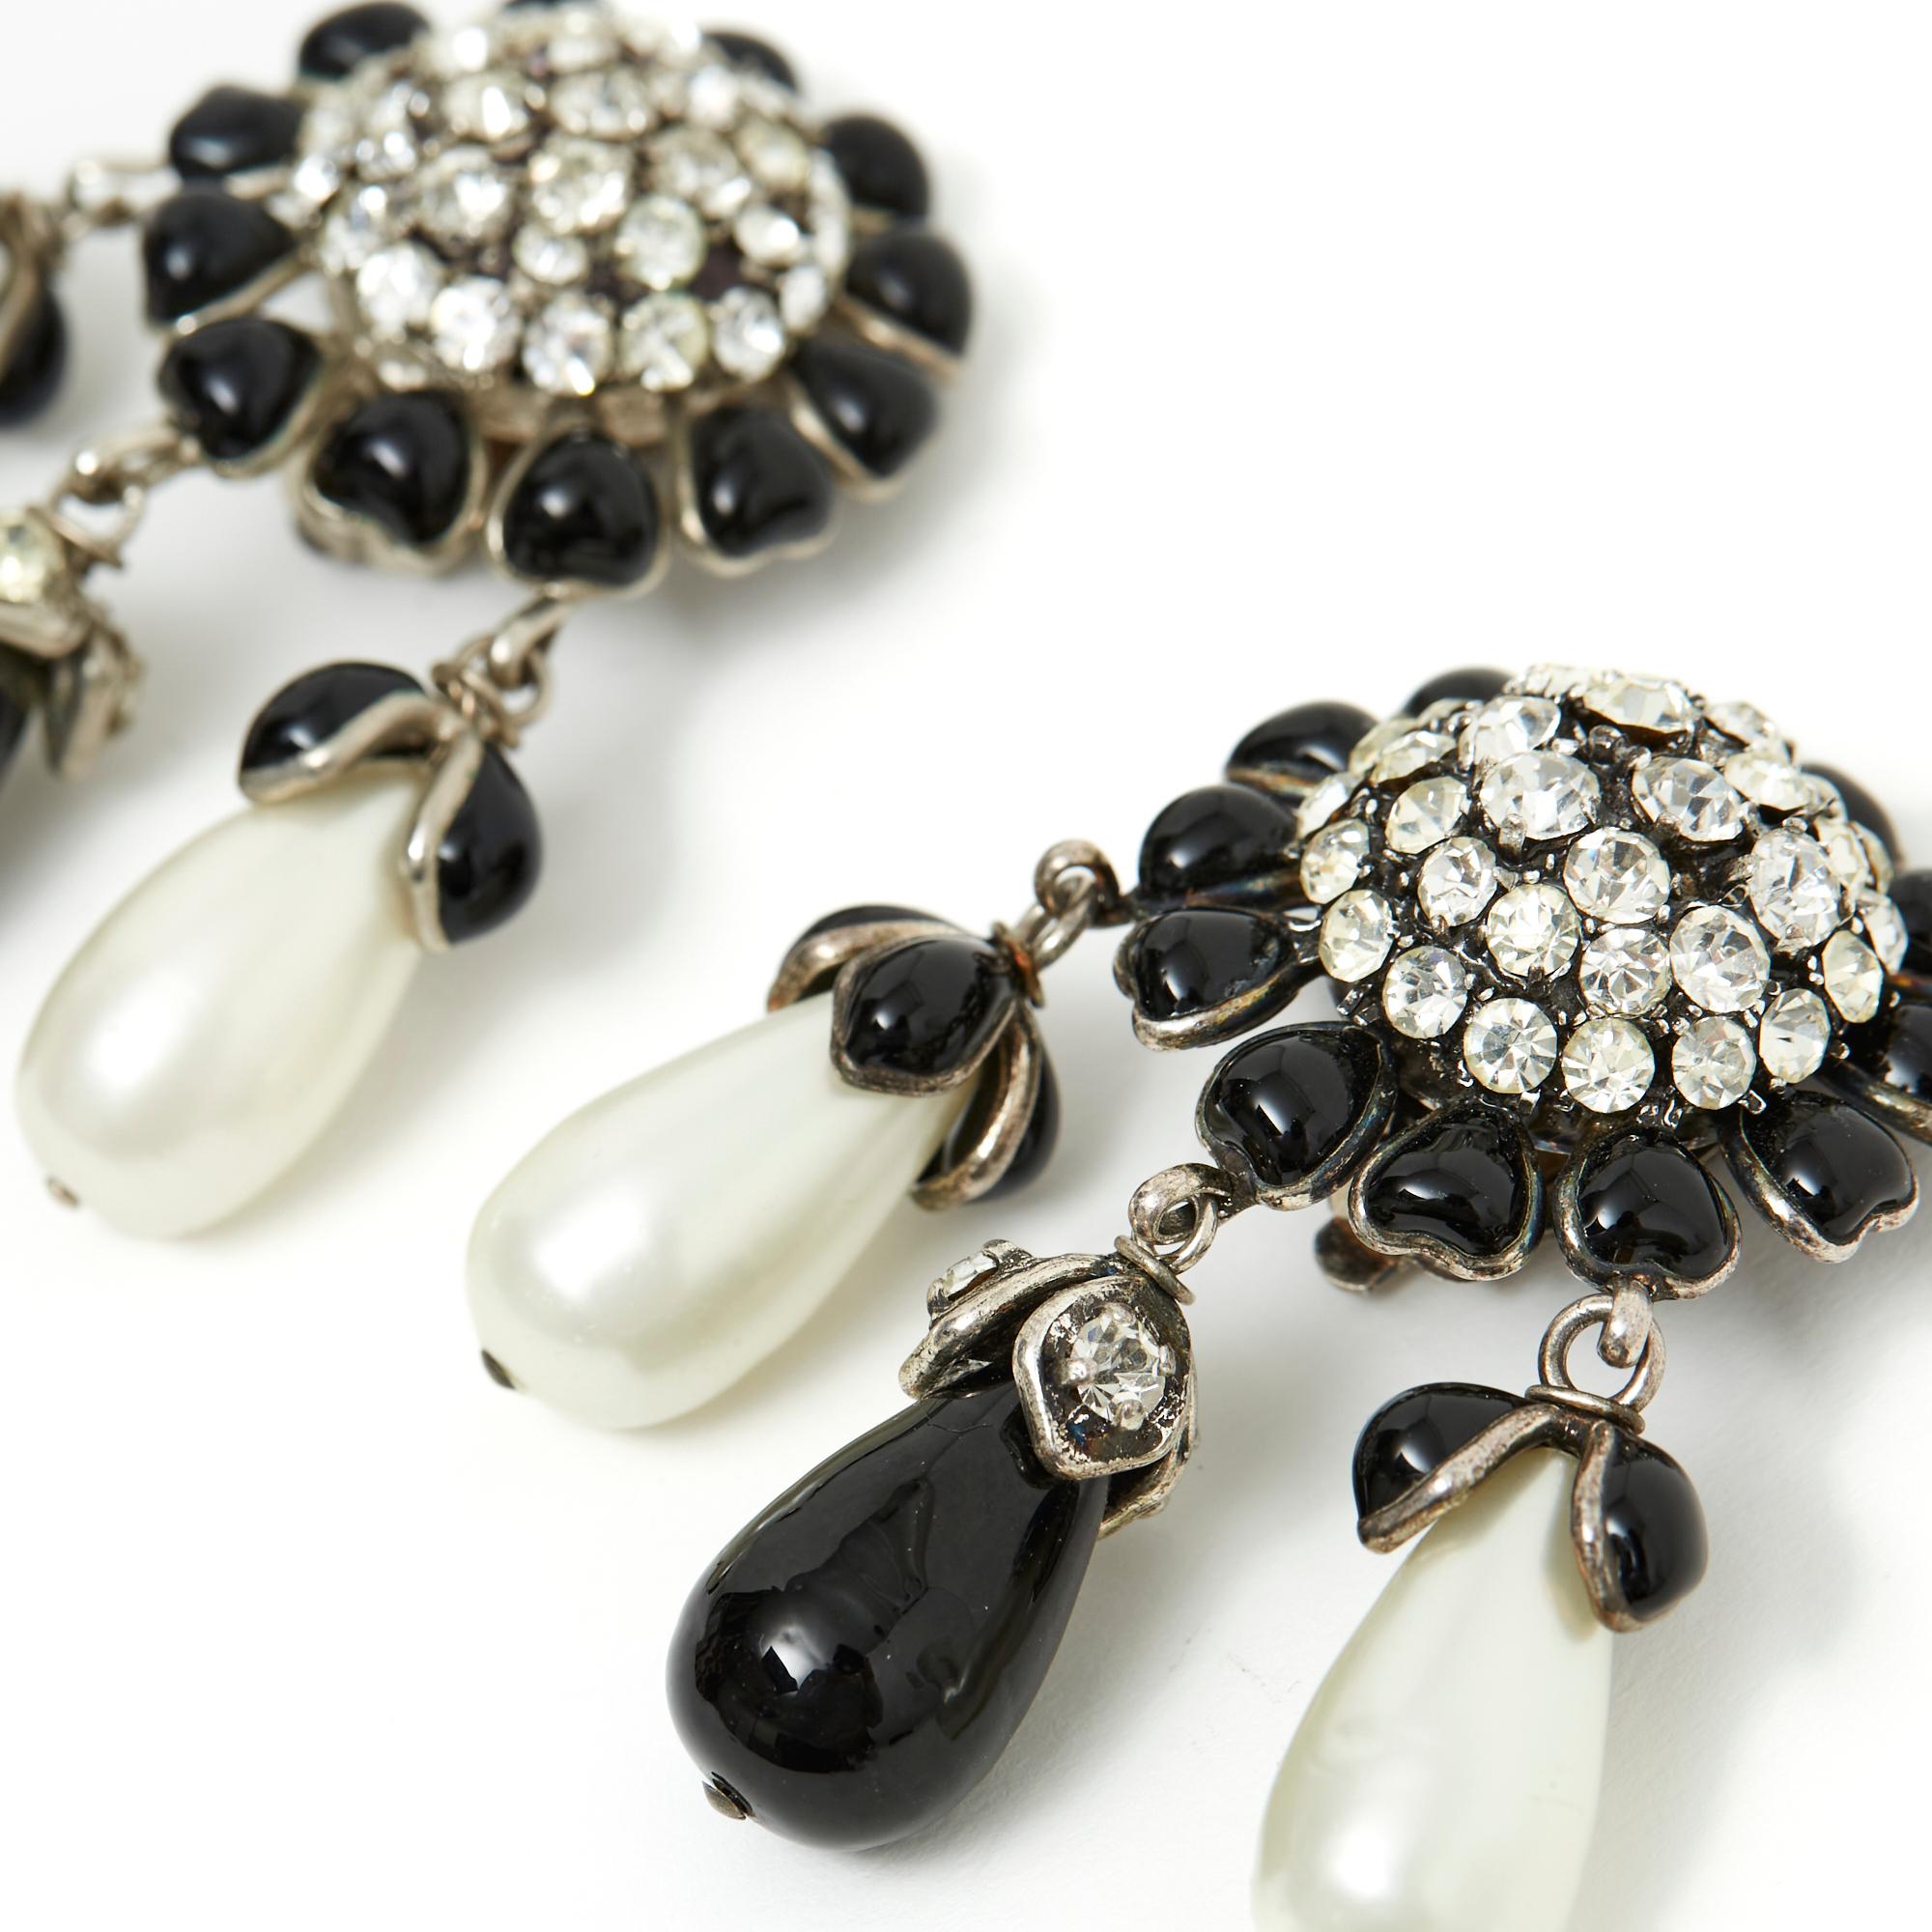 Boucles d'oreilles clip-on Chanel Haute couture en métal argenté, cabochons en pâte de verre noire en cercle autour d'un dôme en strass blanc, pendentifs en goutte de perles en pâte de verre nacrée noire ou blanche. Largeur 4 cm x hauteur 5,9 cm.